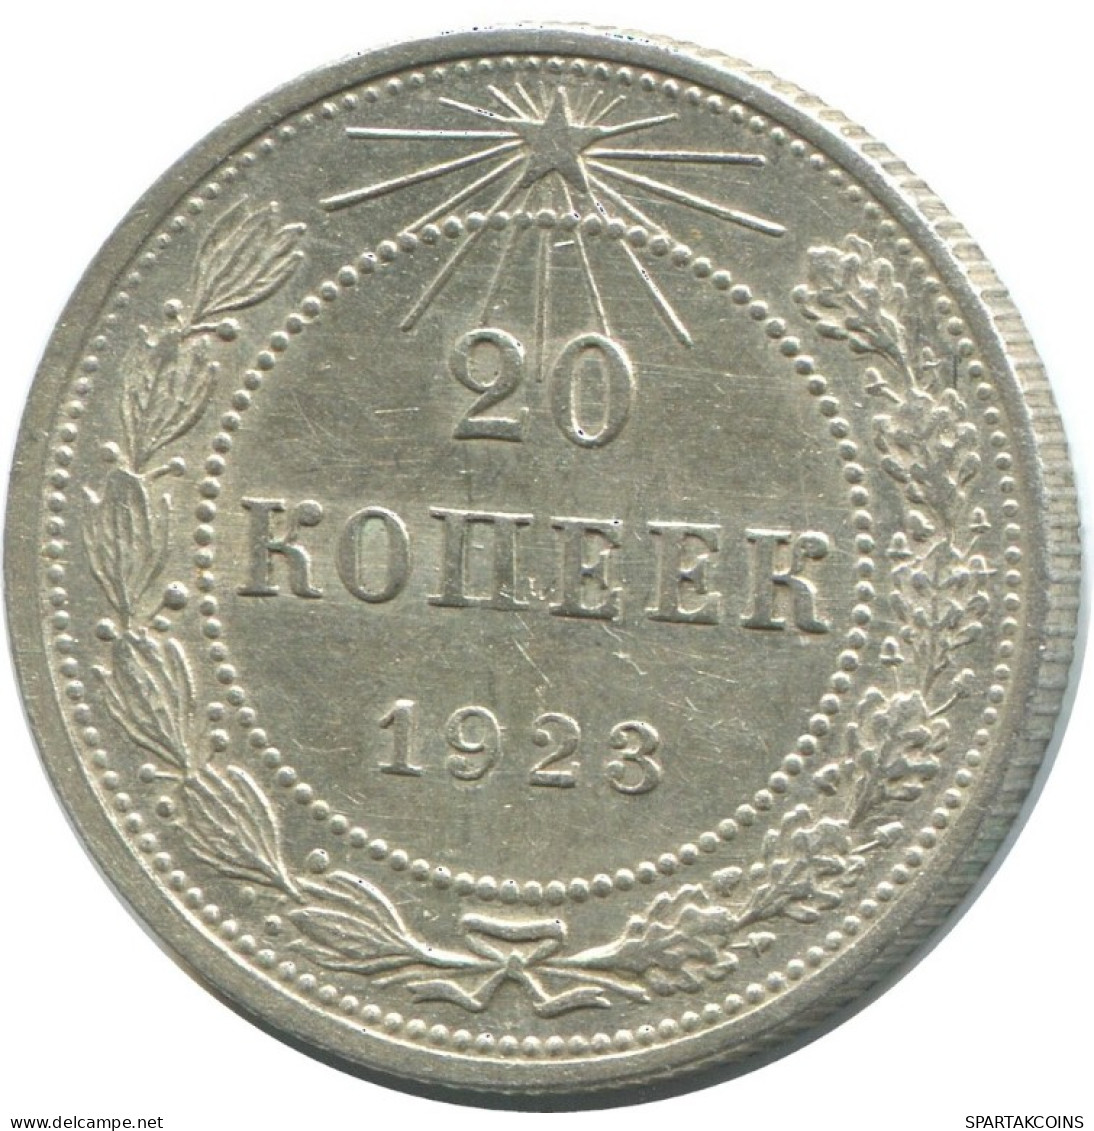 20 KOPEKS 1923 RUSSIA RSFSR SILVER Coin HIGH GRADE #AF654.U.A - Russland